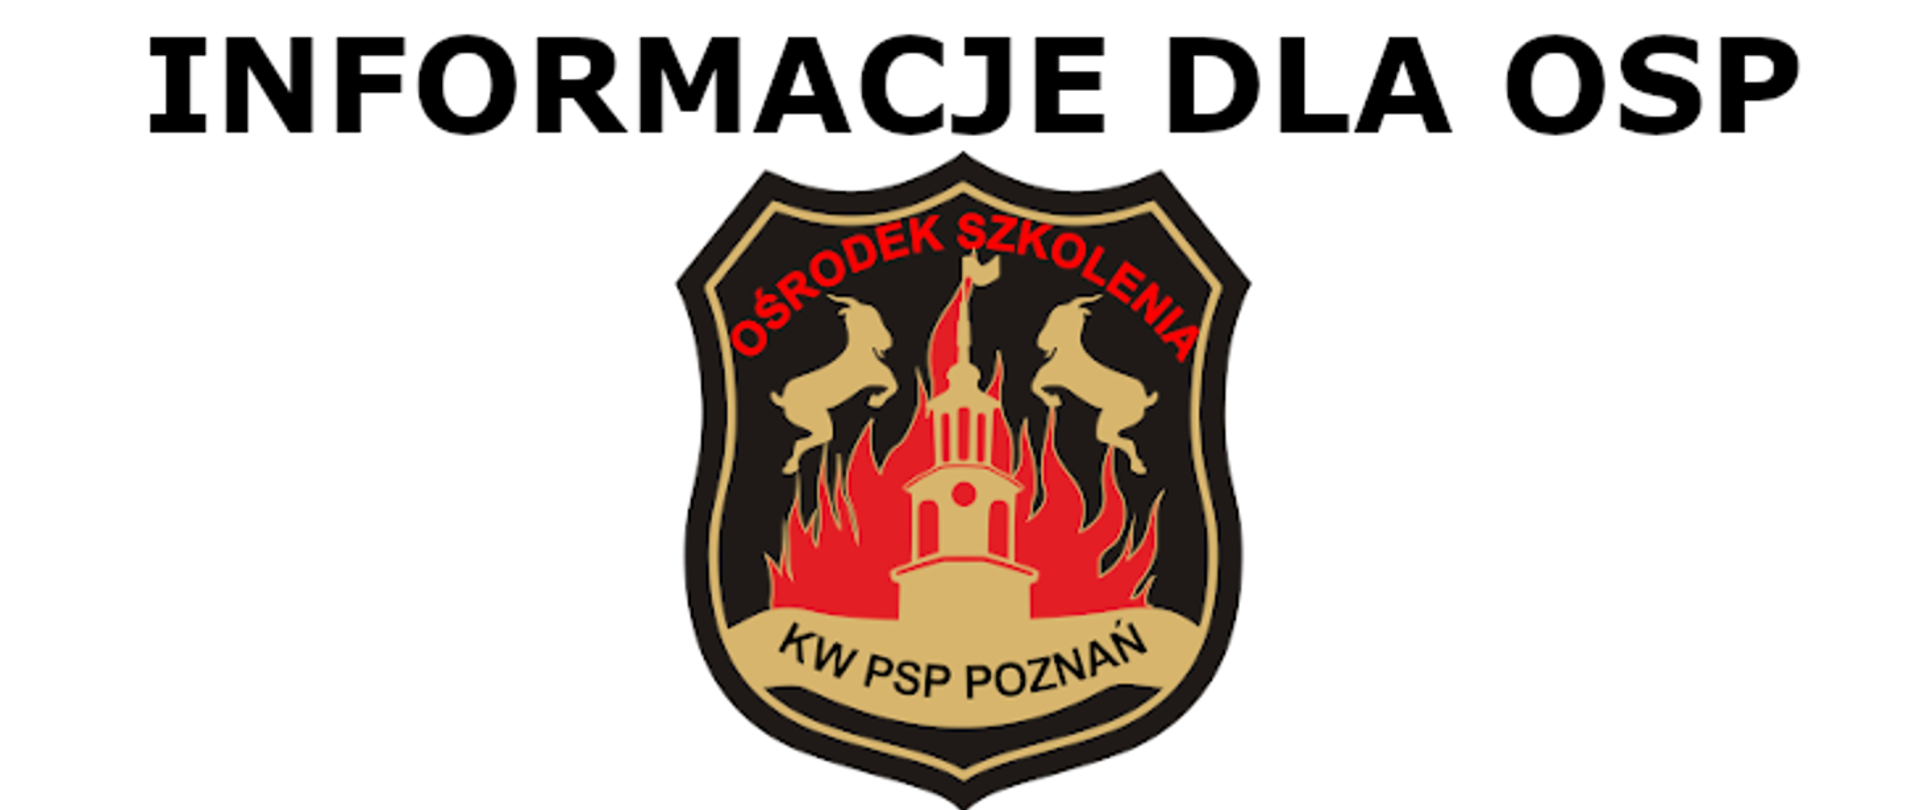 logo ośrodka szkolenia kw psp w poznaniu na którym znajduje się namalowana część ratusza , za nimi płomienie oraz dwa koziołki,
nad logo jest napis informacje dla osp